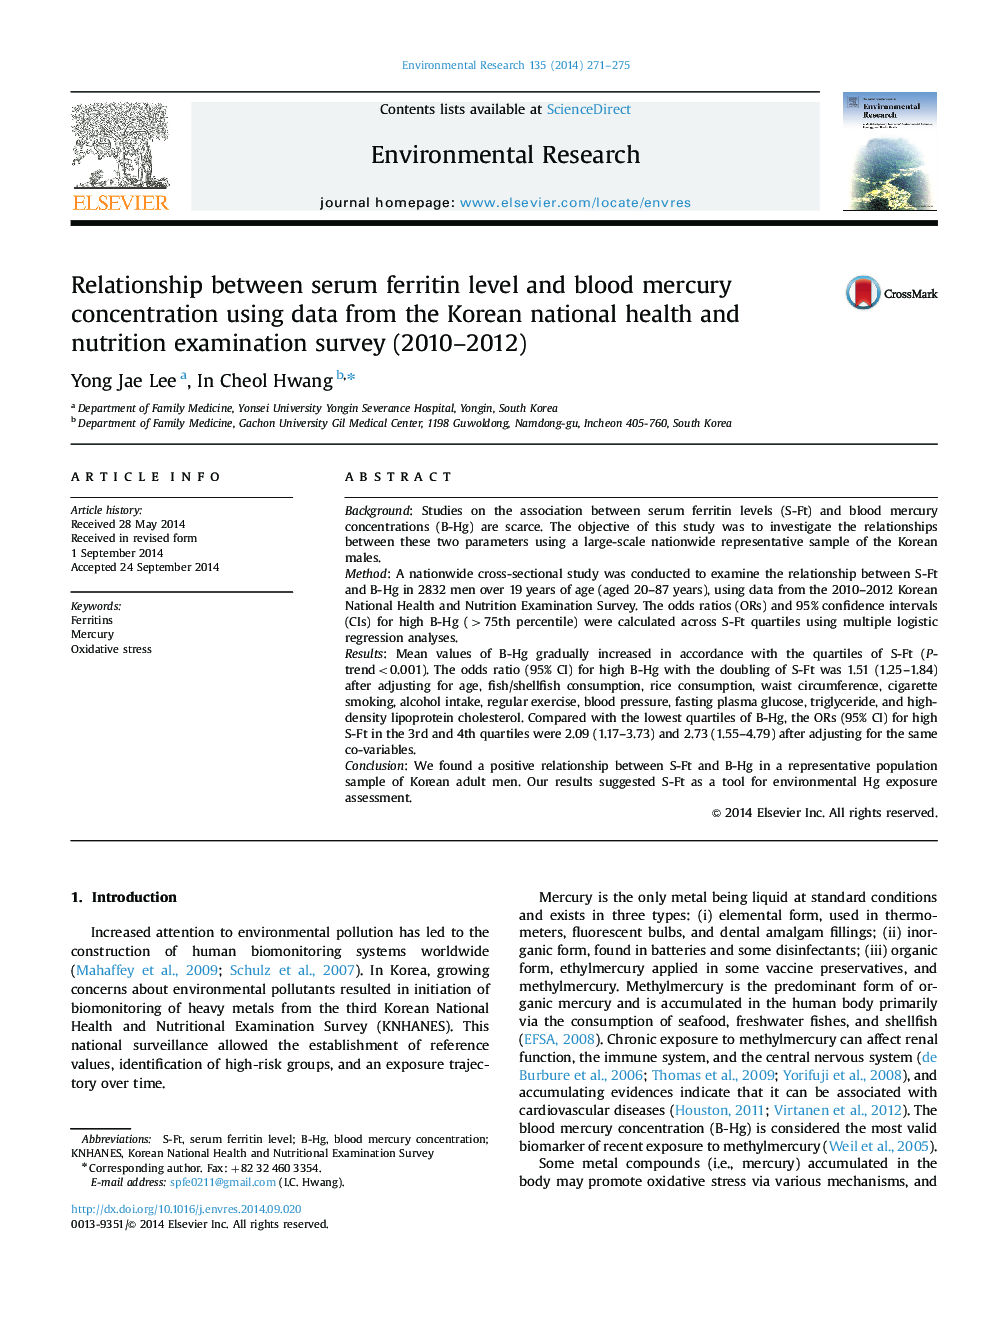 ارتباط سطح سرمی فریتین و غلظت جیوه خون با استفاده از داده ها از نظر سنجی بهداشت و تغذیه ملی کره (2010-2012) 